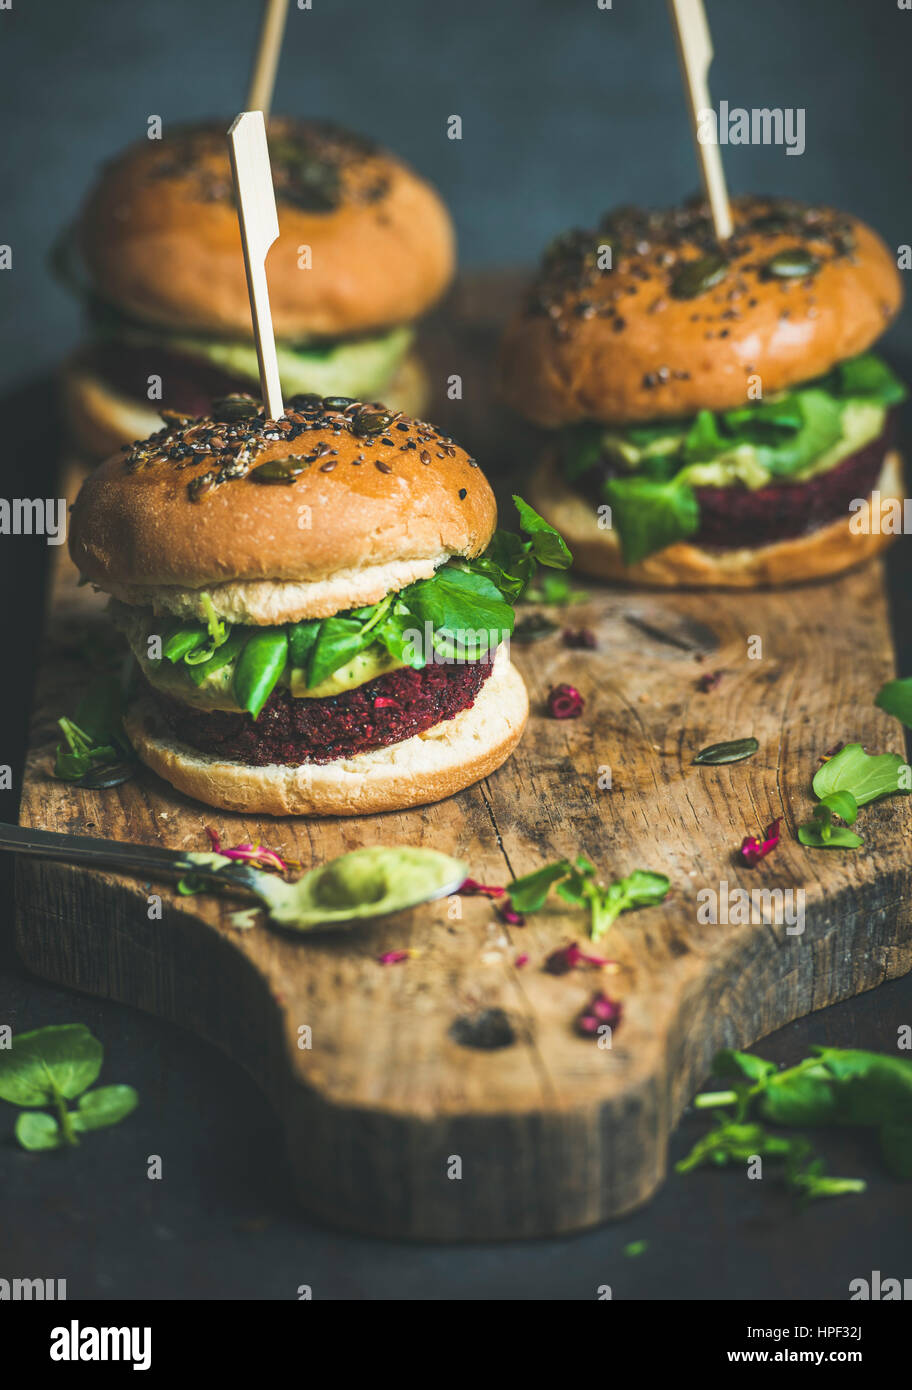 Gesunde vegane Burger mit rote Beete und Quinoa Patty, Rucola, Avocado-Sauce, Vollkorn Brötchen auf rustikalem Holzbrett auf dunklem Hintergrund, selektive fo Stockfoto